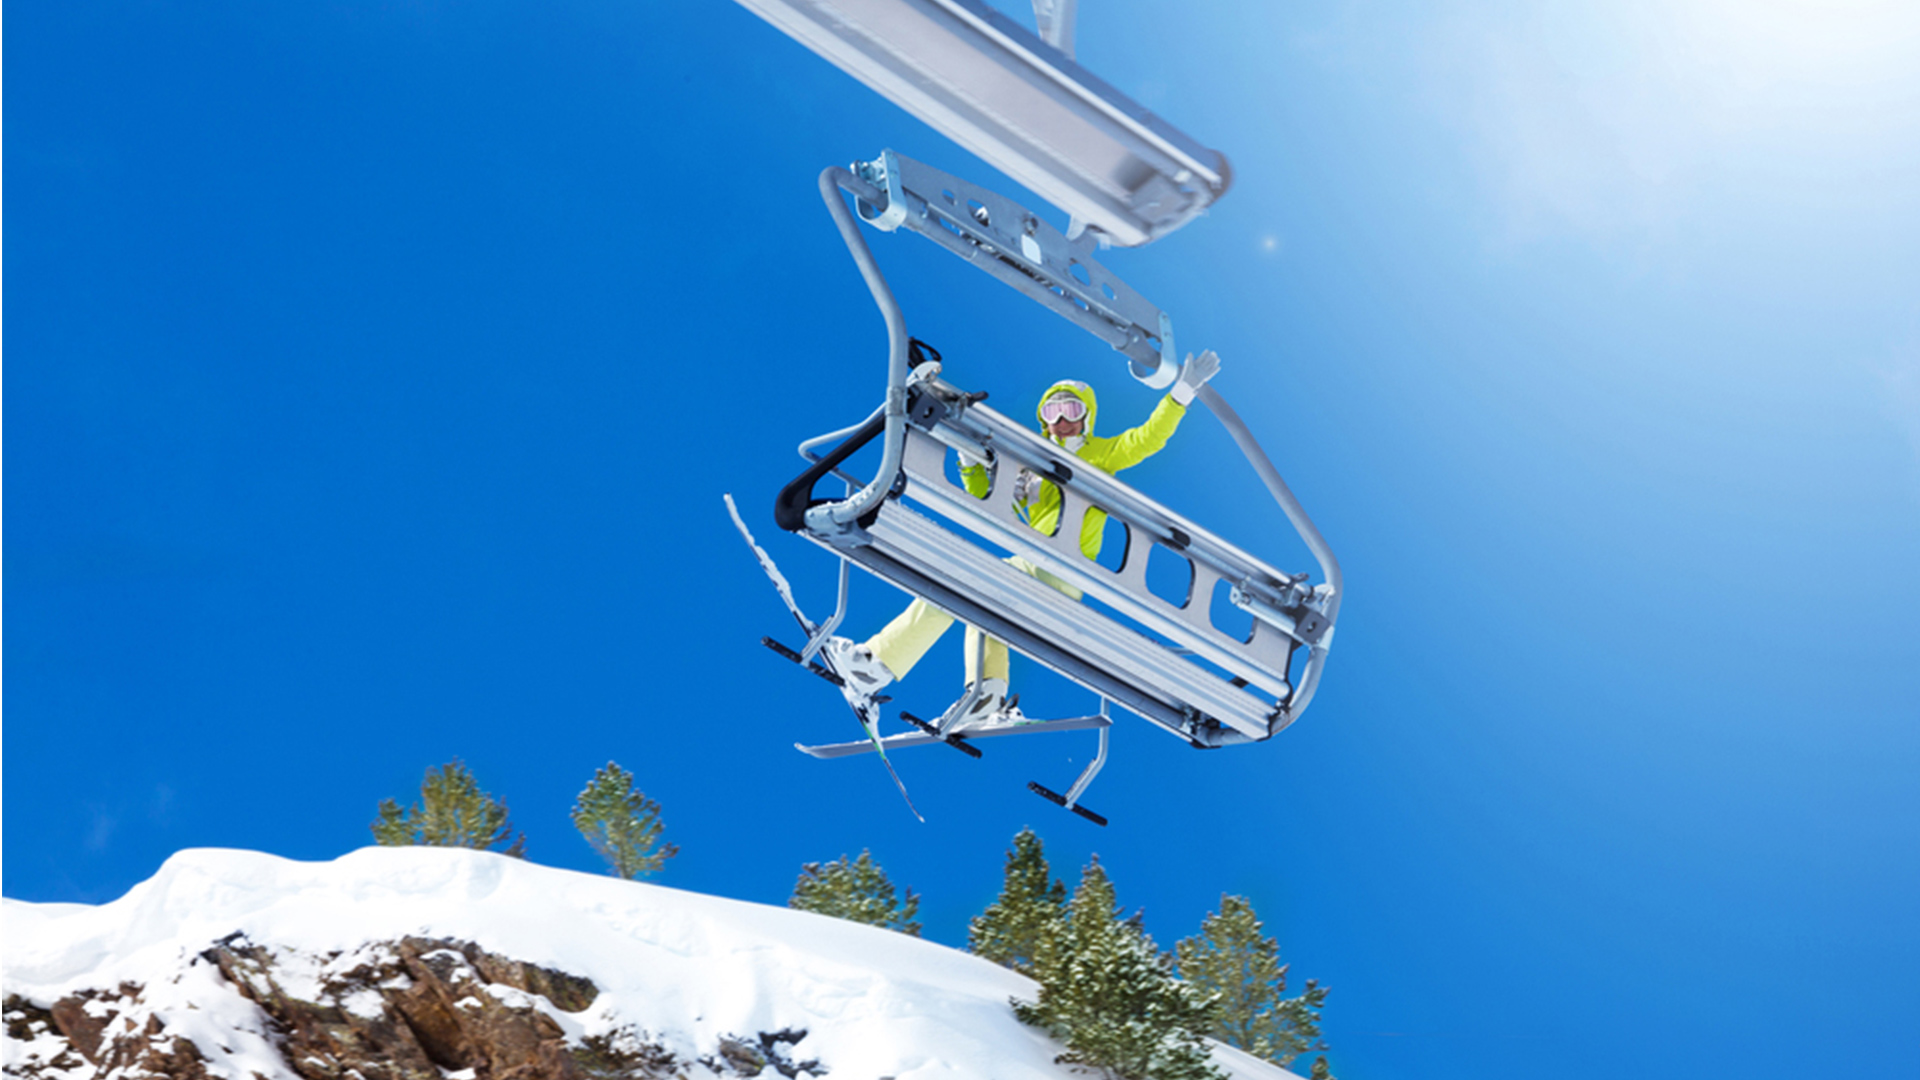 Ski lift networks